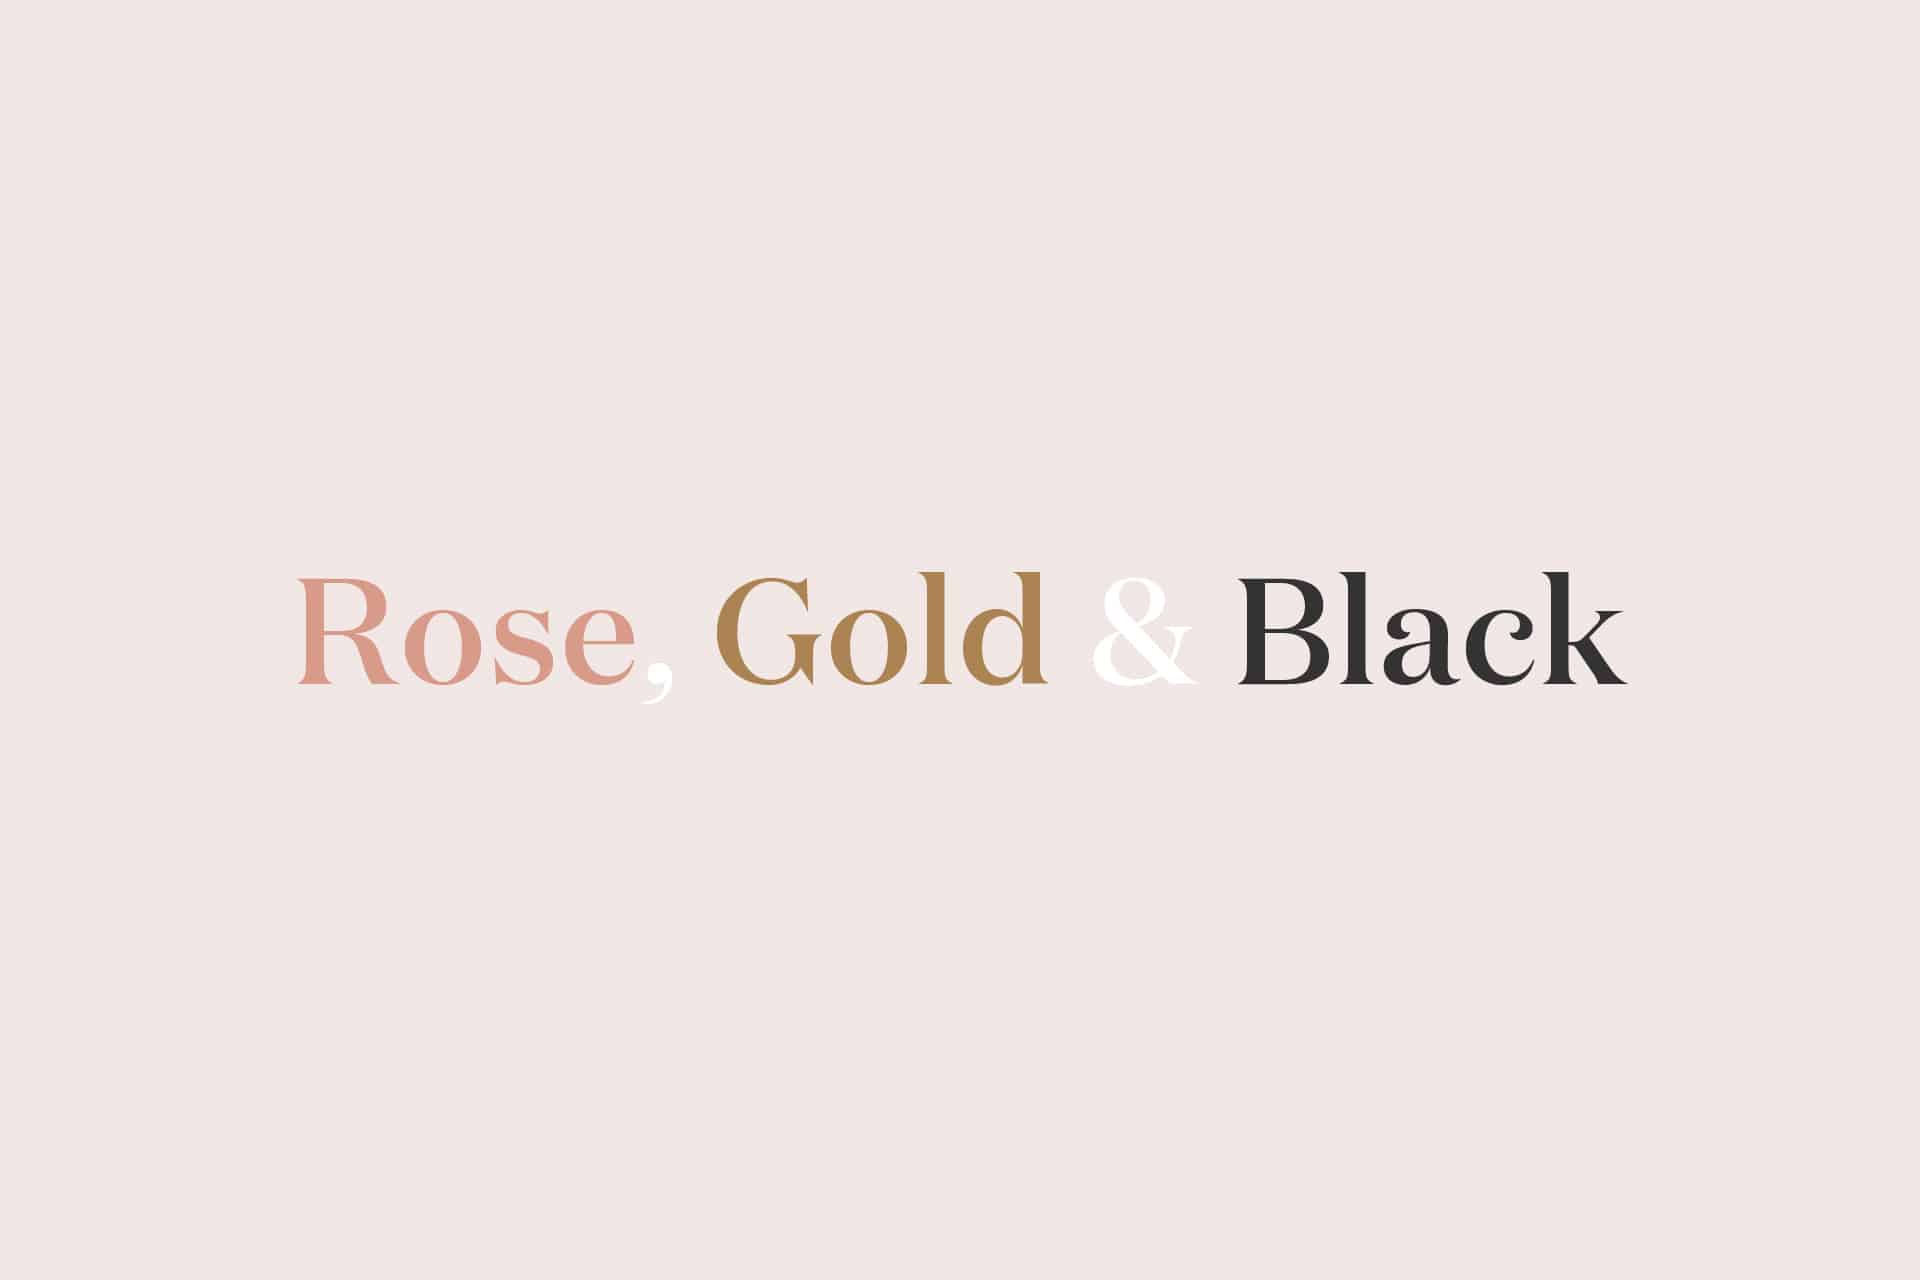 Rose Gold and Black Logo - Rose, Gold & Black